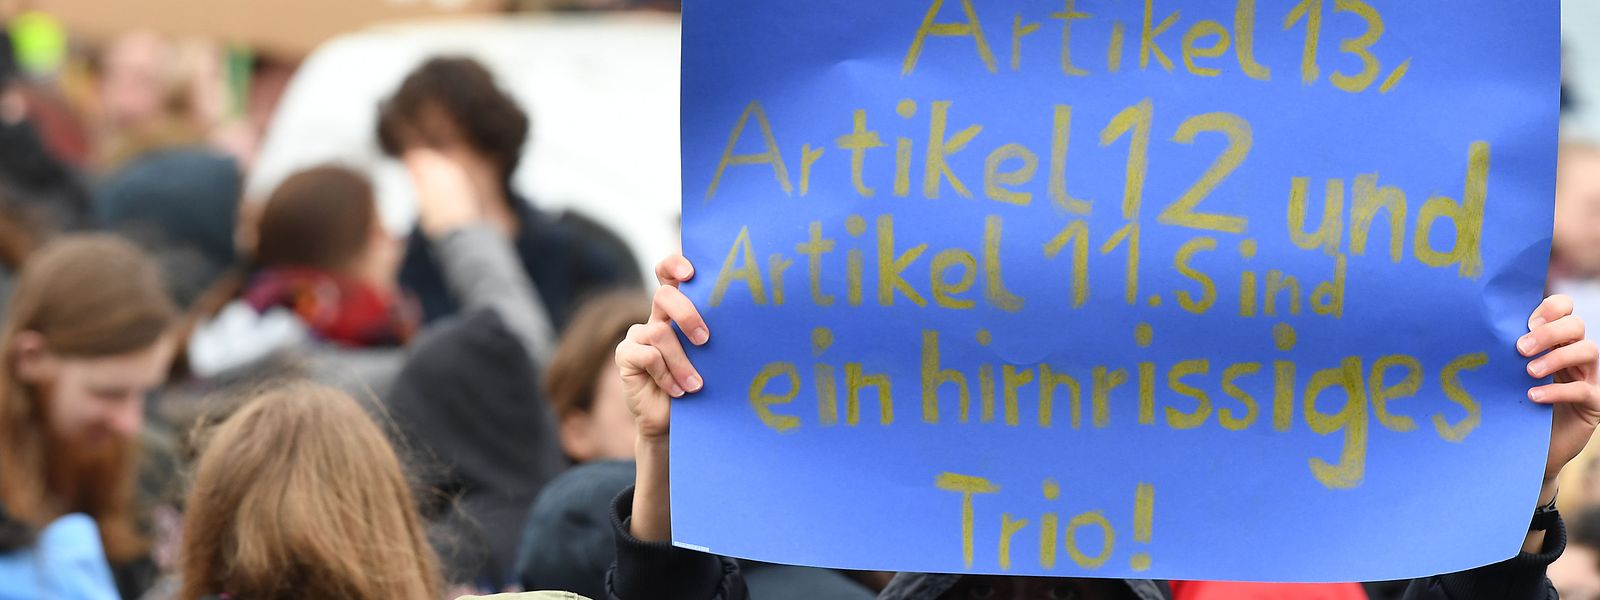 Am Samstag wird europaweit gegen die EU-Urheberrechtsreform demonstiert, auch in Luxemburg. 